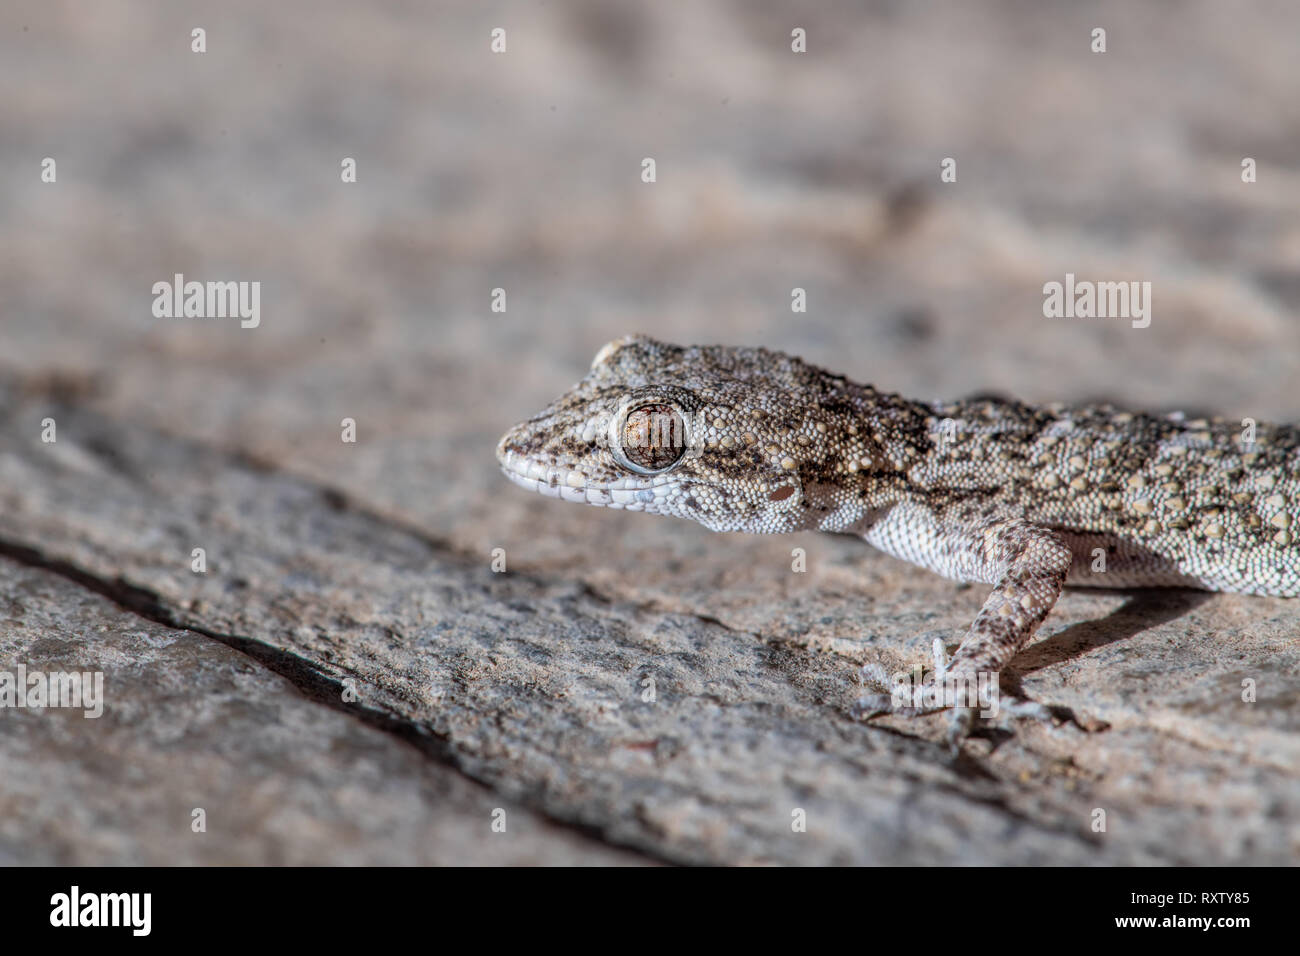 Un Kotschy's gecko encontrados en su entorno natural Foto de stock